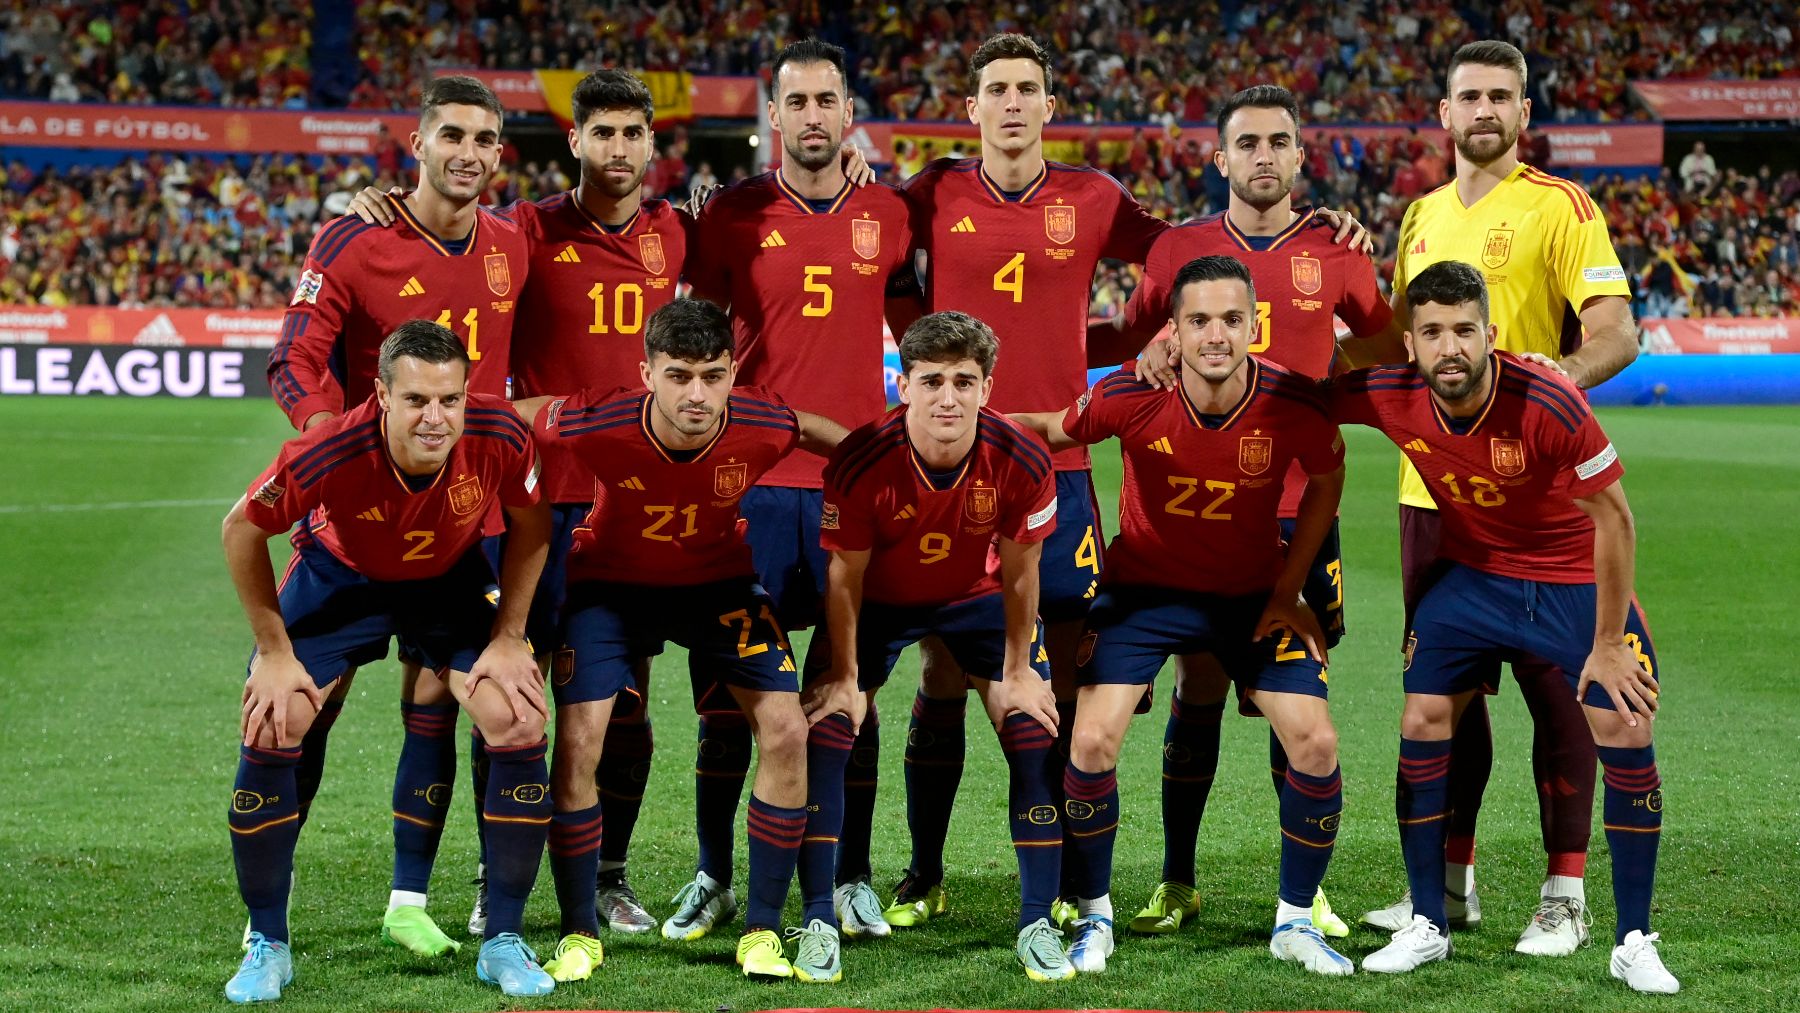 Los jugadores de la selección española antes de un partido. (AFP)